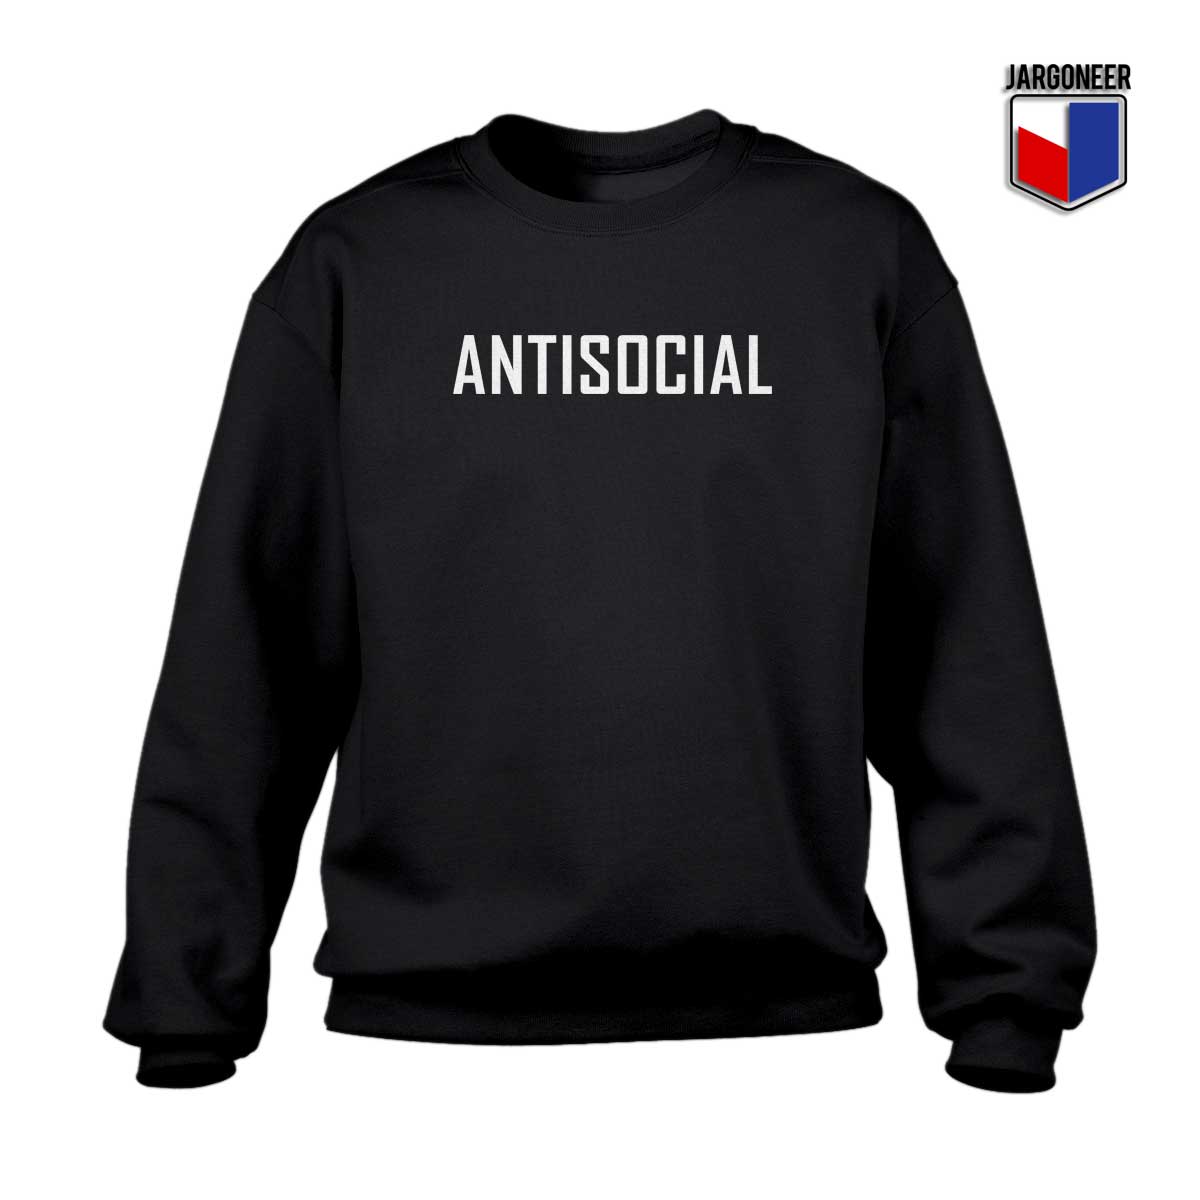 Antisocial - Shop Unique Graphic Cool Shirt Designs